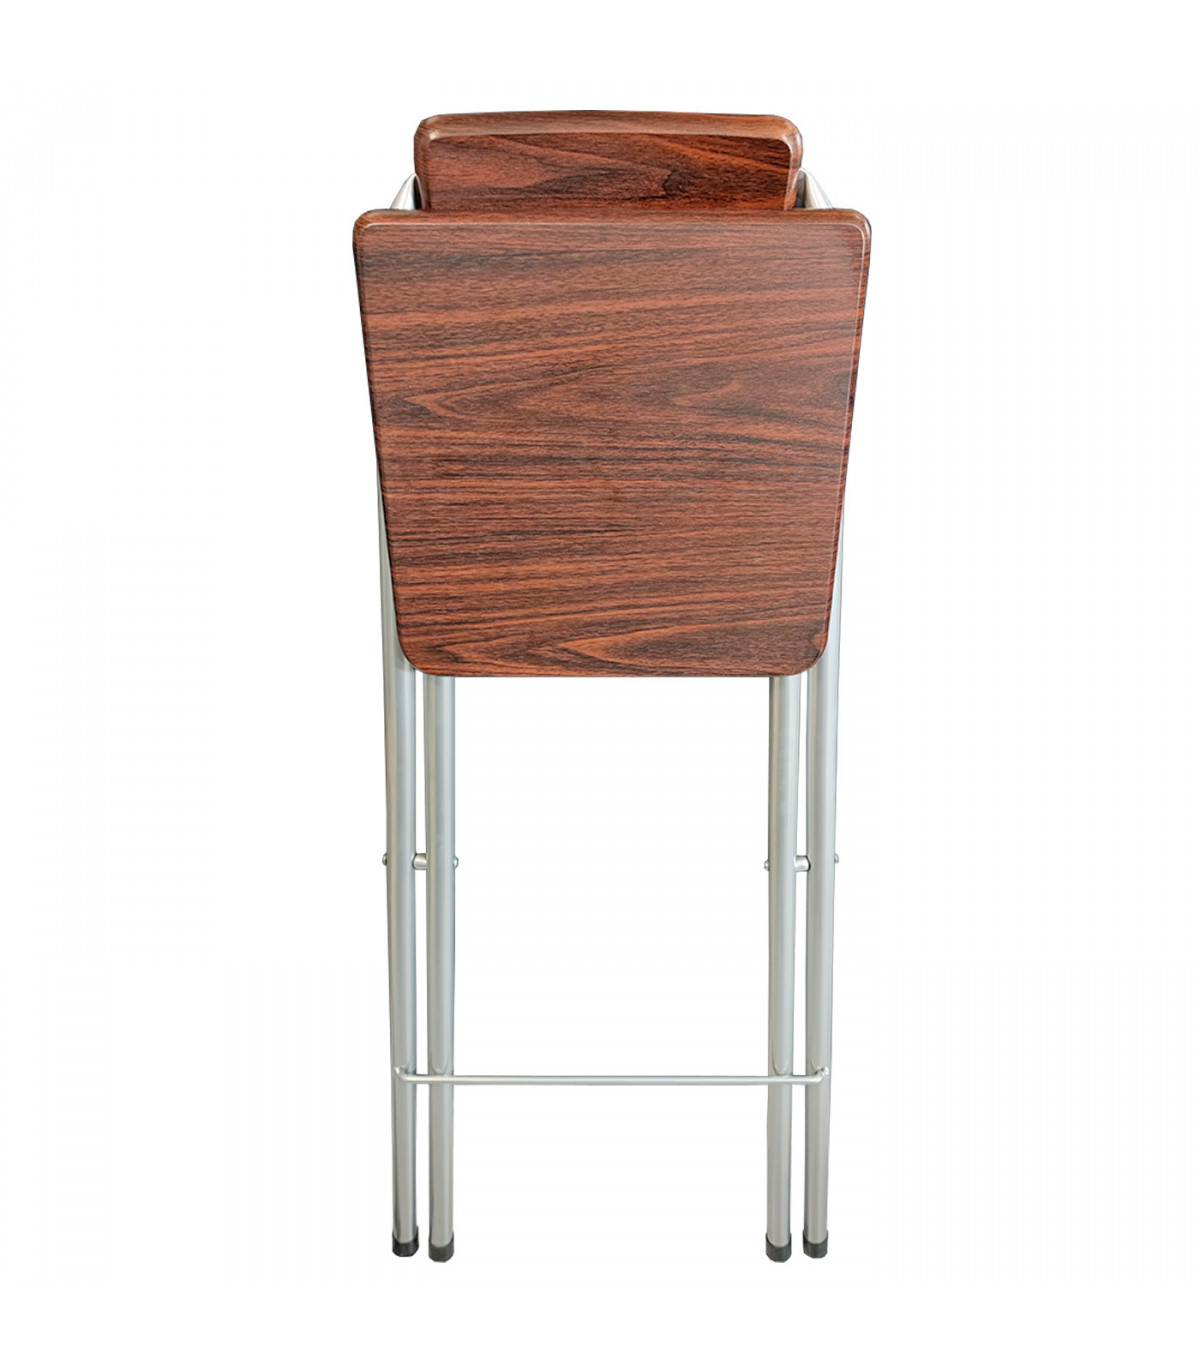  J-DYHGB Taburetes de madera maciza sin respaldo - Taburete de  mesa de bar de cocina con reposapiés - Cómodo asiento curvado, silla de  bar, silla de cocina, fácil de mover y